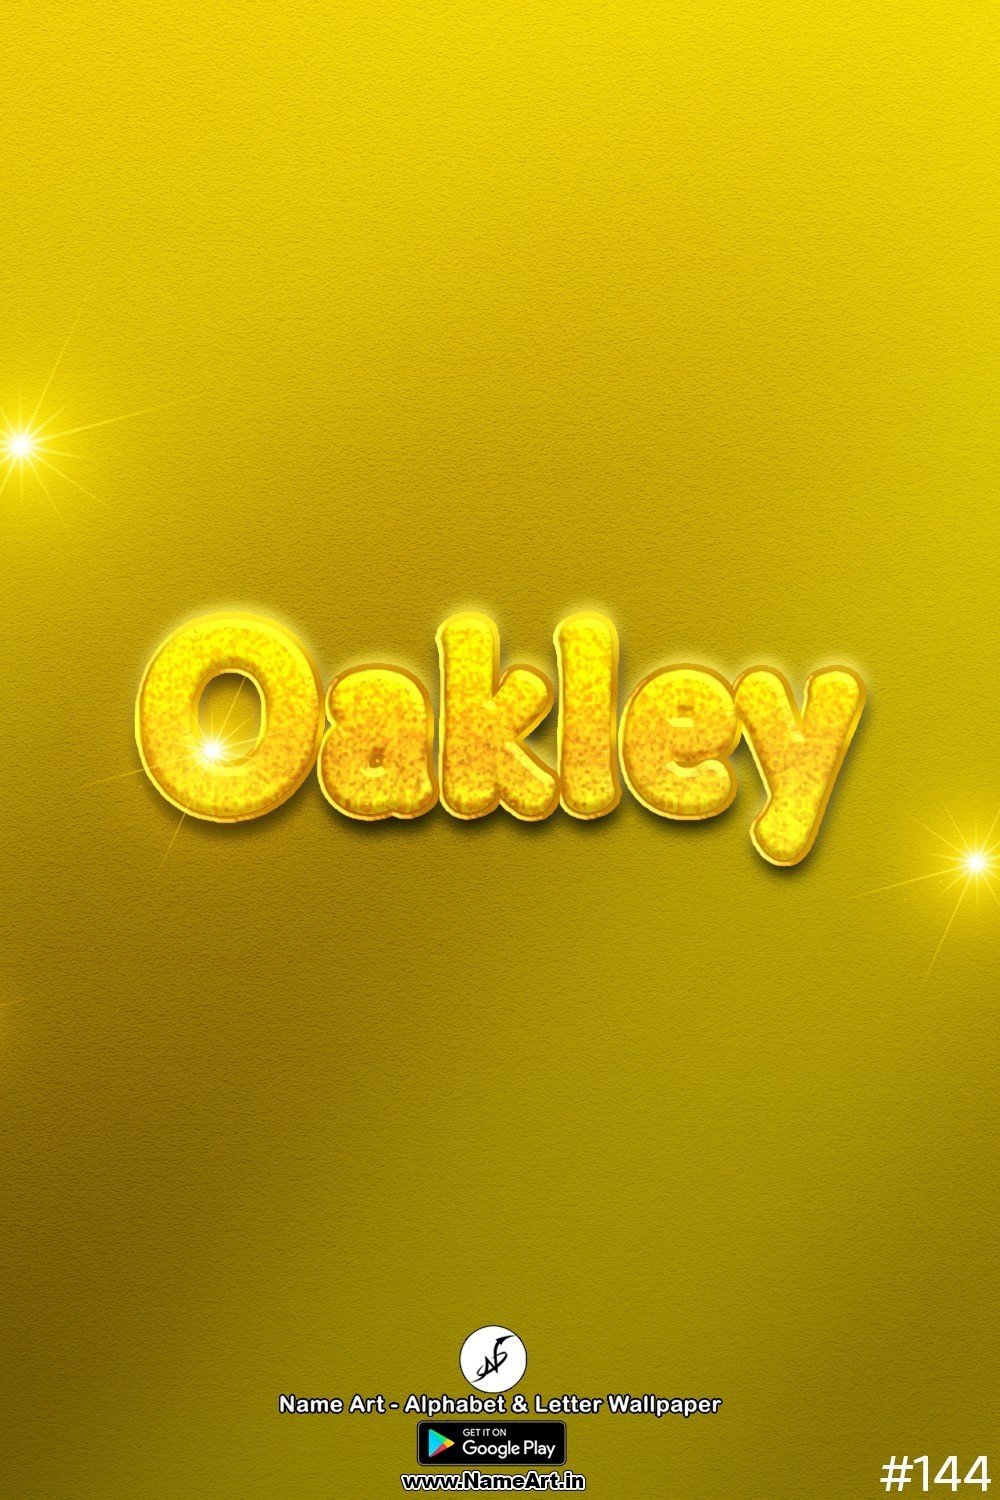 Oakley | Whatsapp Status Oakley | Happy Birthday Oakley !! | New Whatsapp Status Oakley Images |